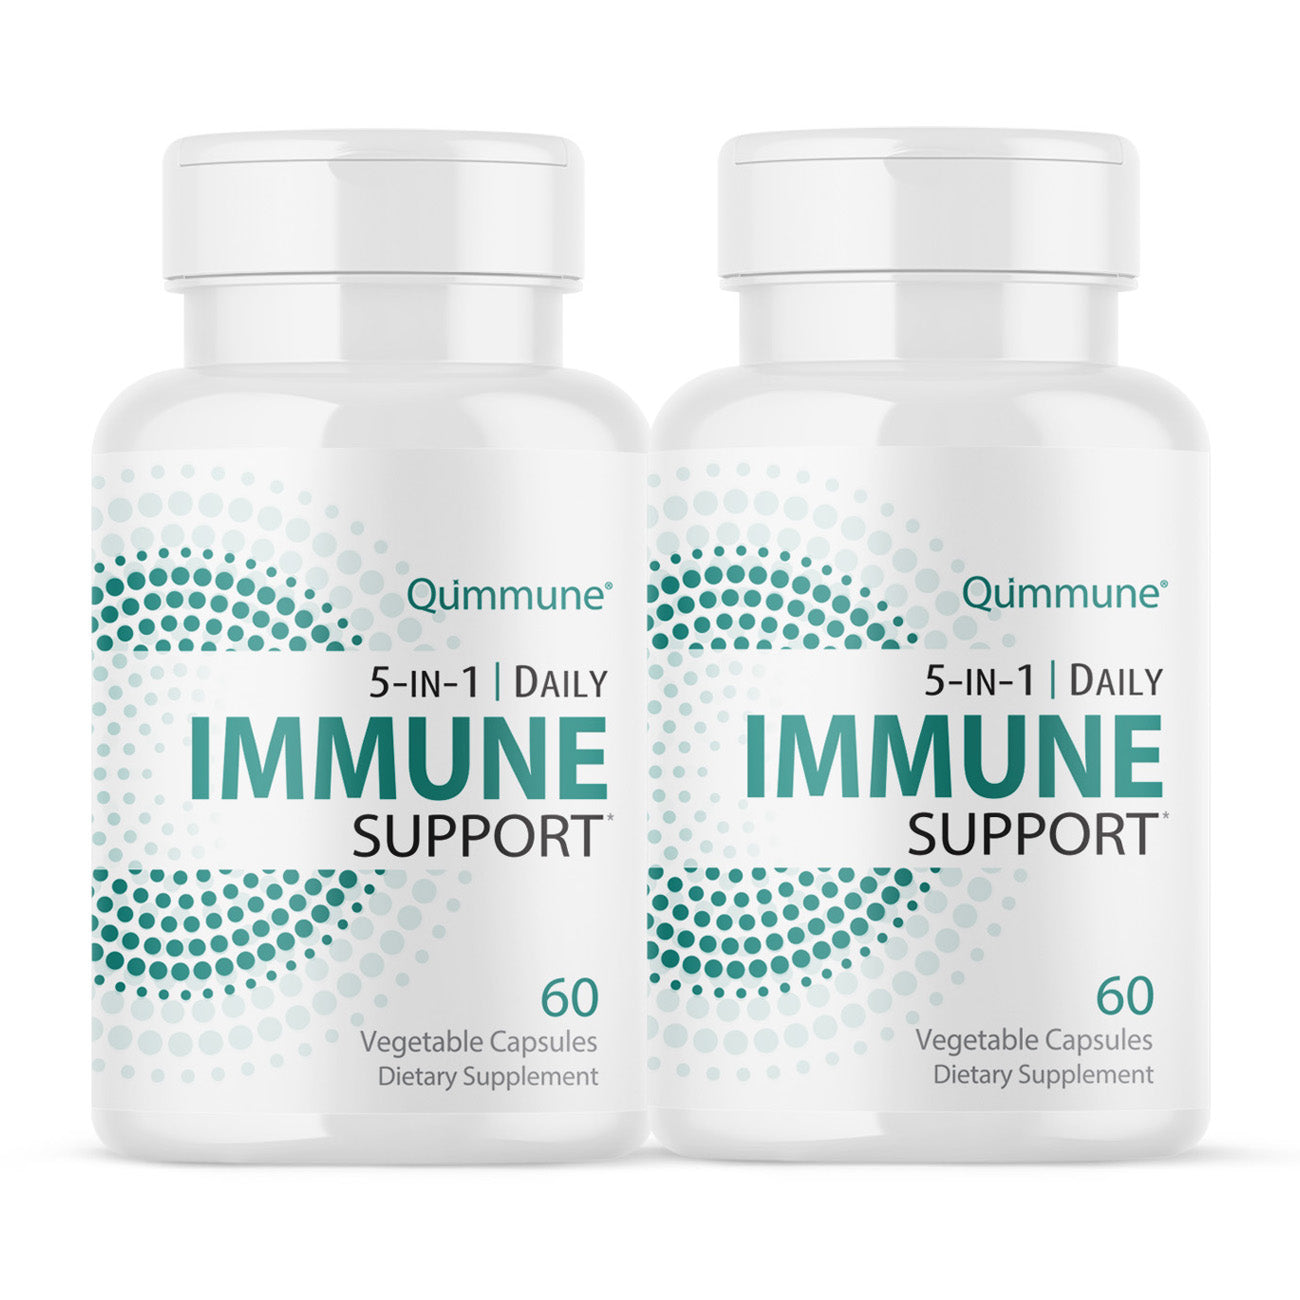 Qummune 5-in-1 Daily Immune